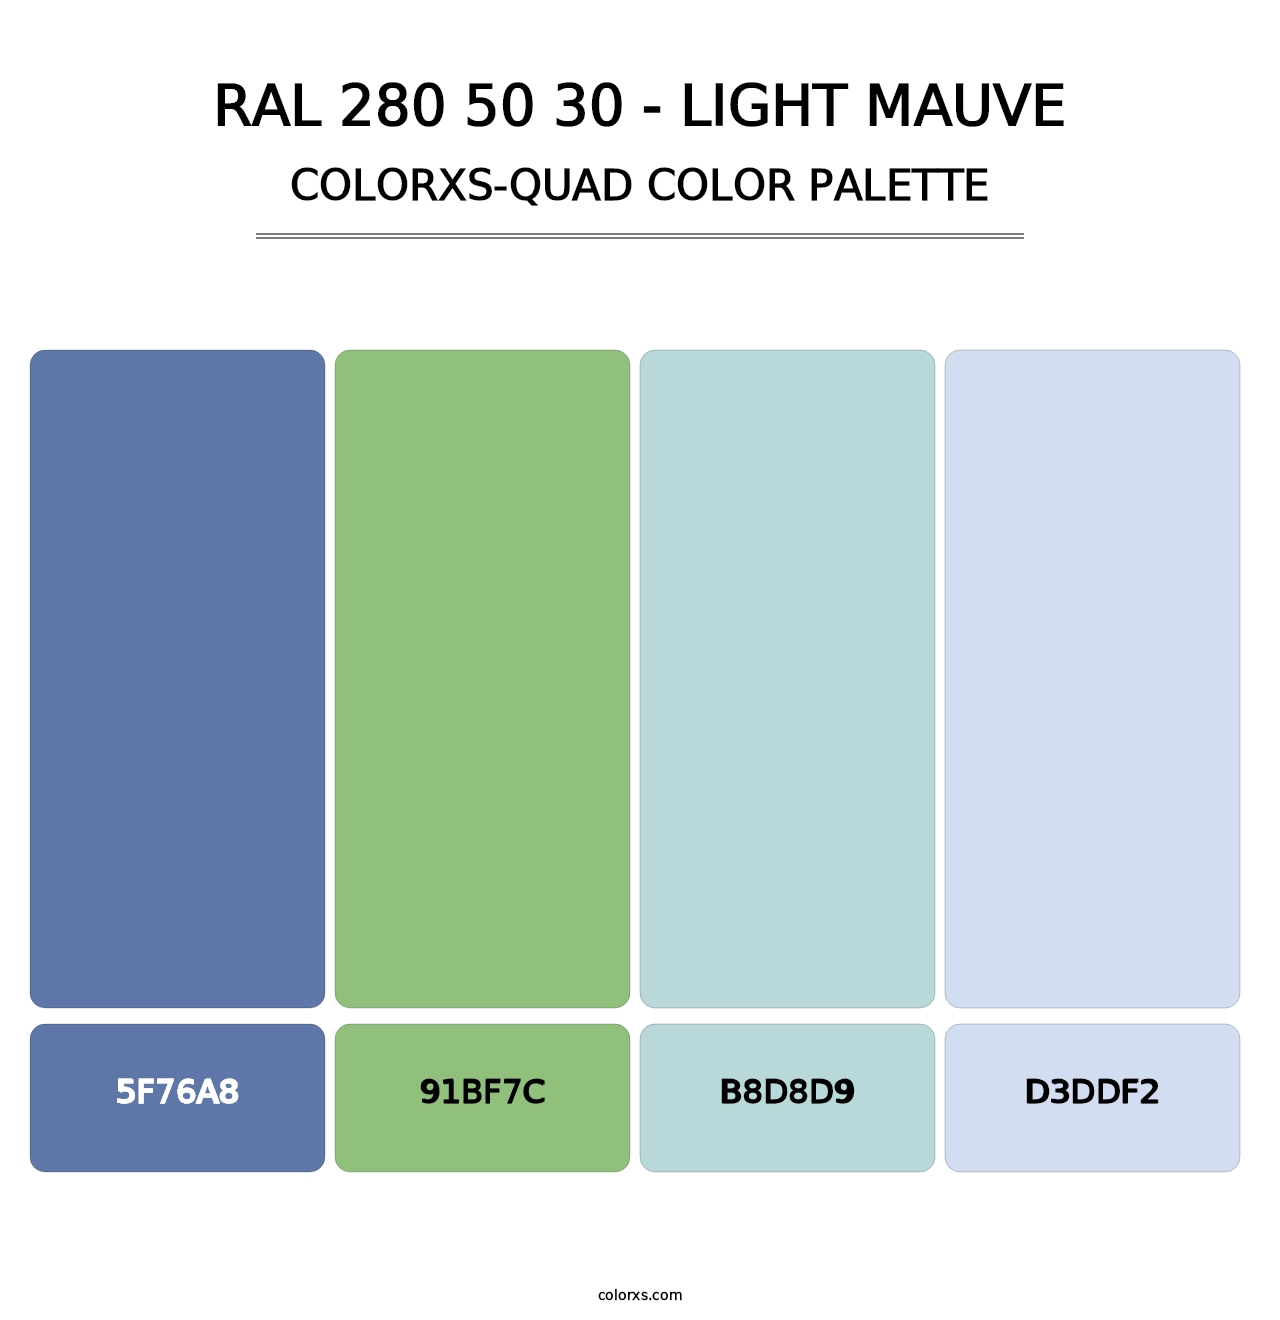 RAL 280 50 30 - Light Mauve - Colorxs Quad Palette